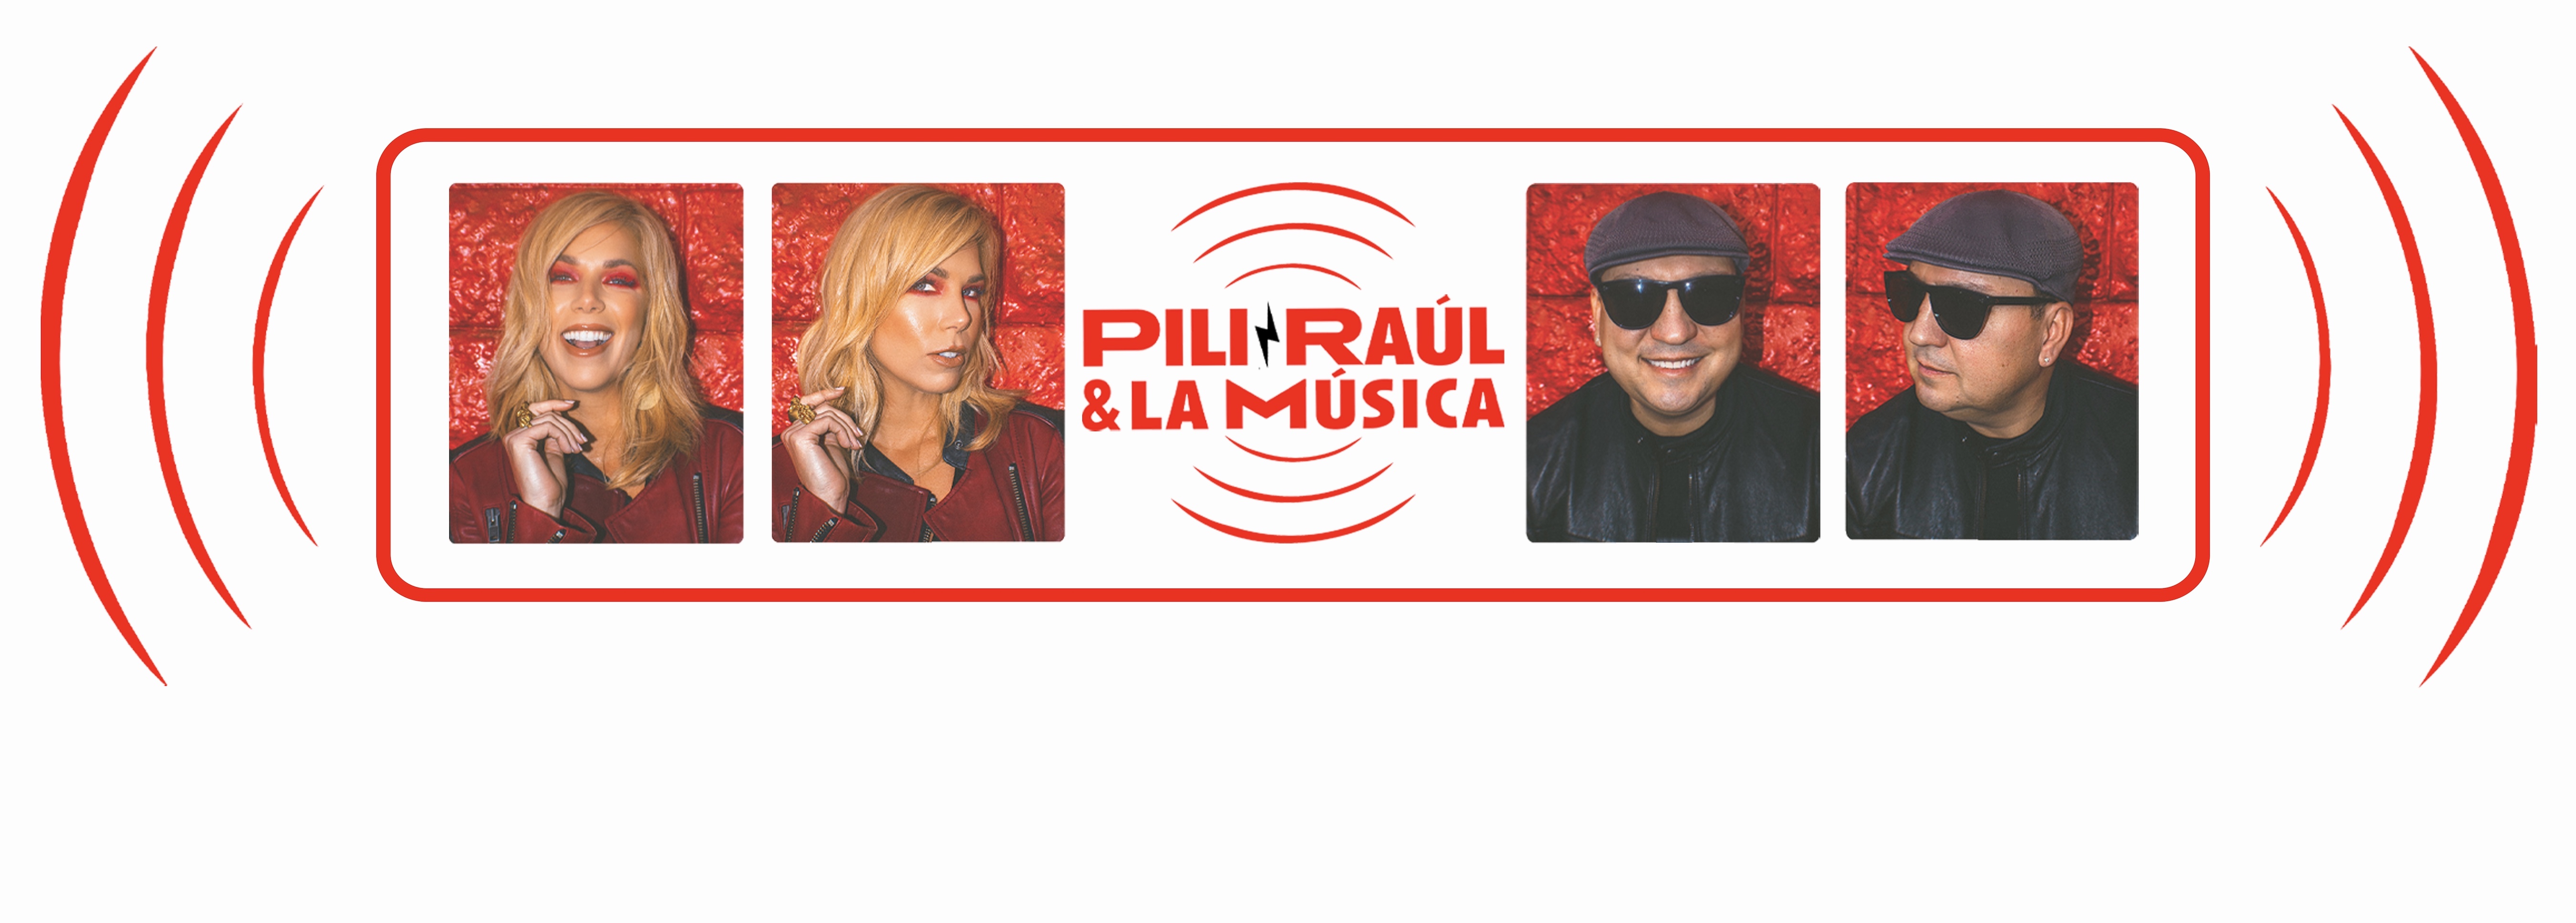 Pili, Raúl & La Música header image 1